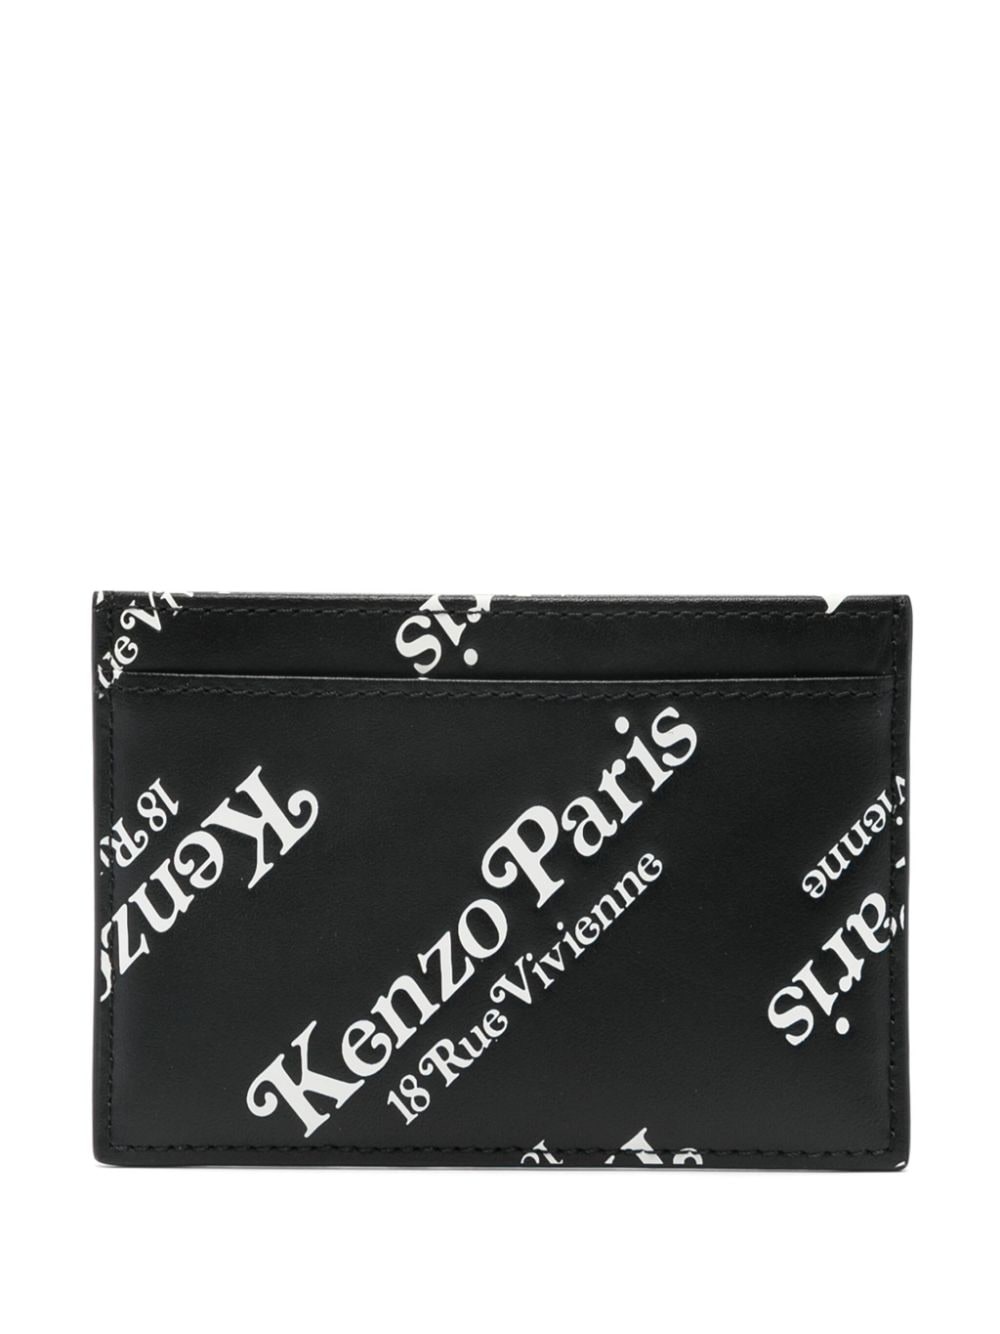 Kenzogram leather cardholder - 2